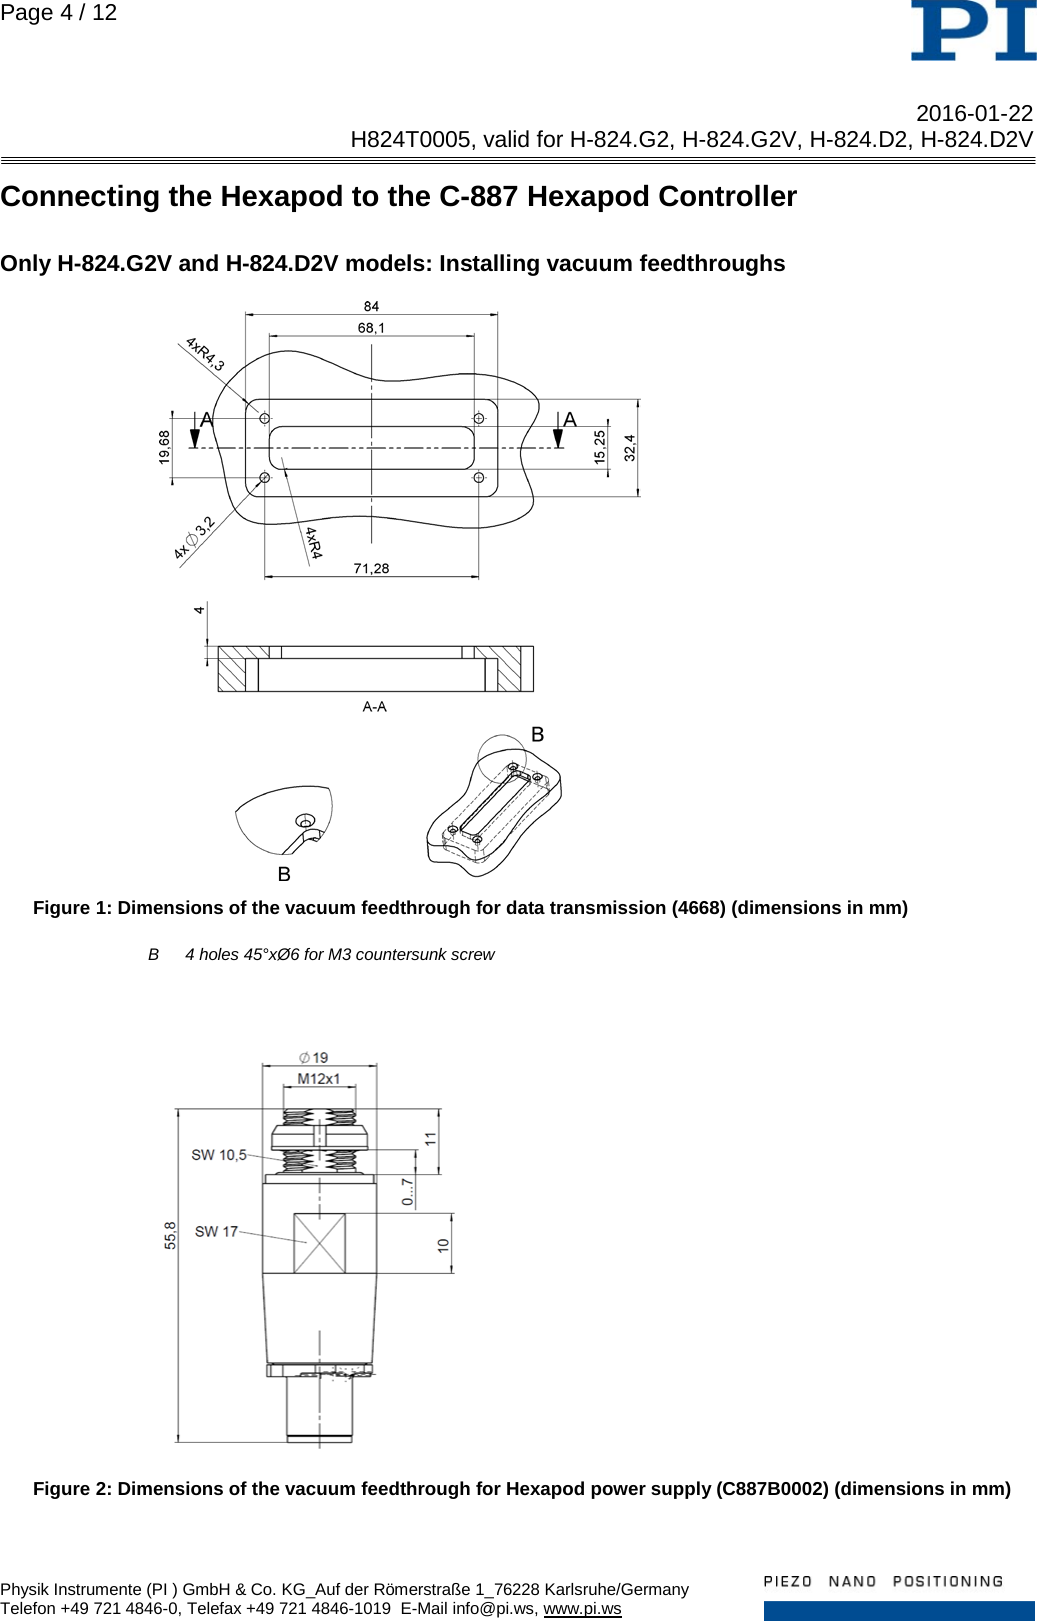 Page 4 of 12 - Physik Instrumente .  H824T0005 TN H-824 D2 G2 D2V G2V